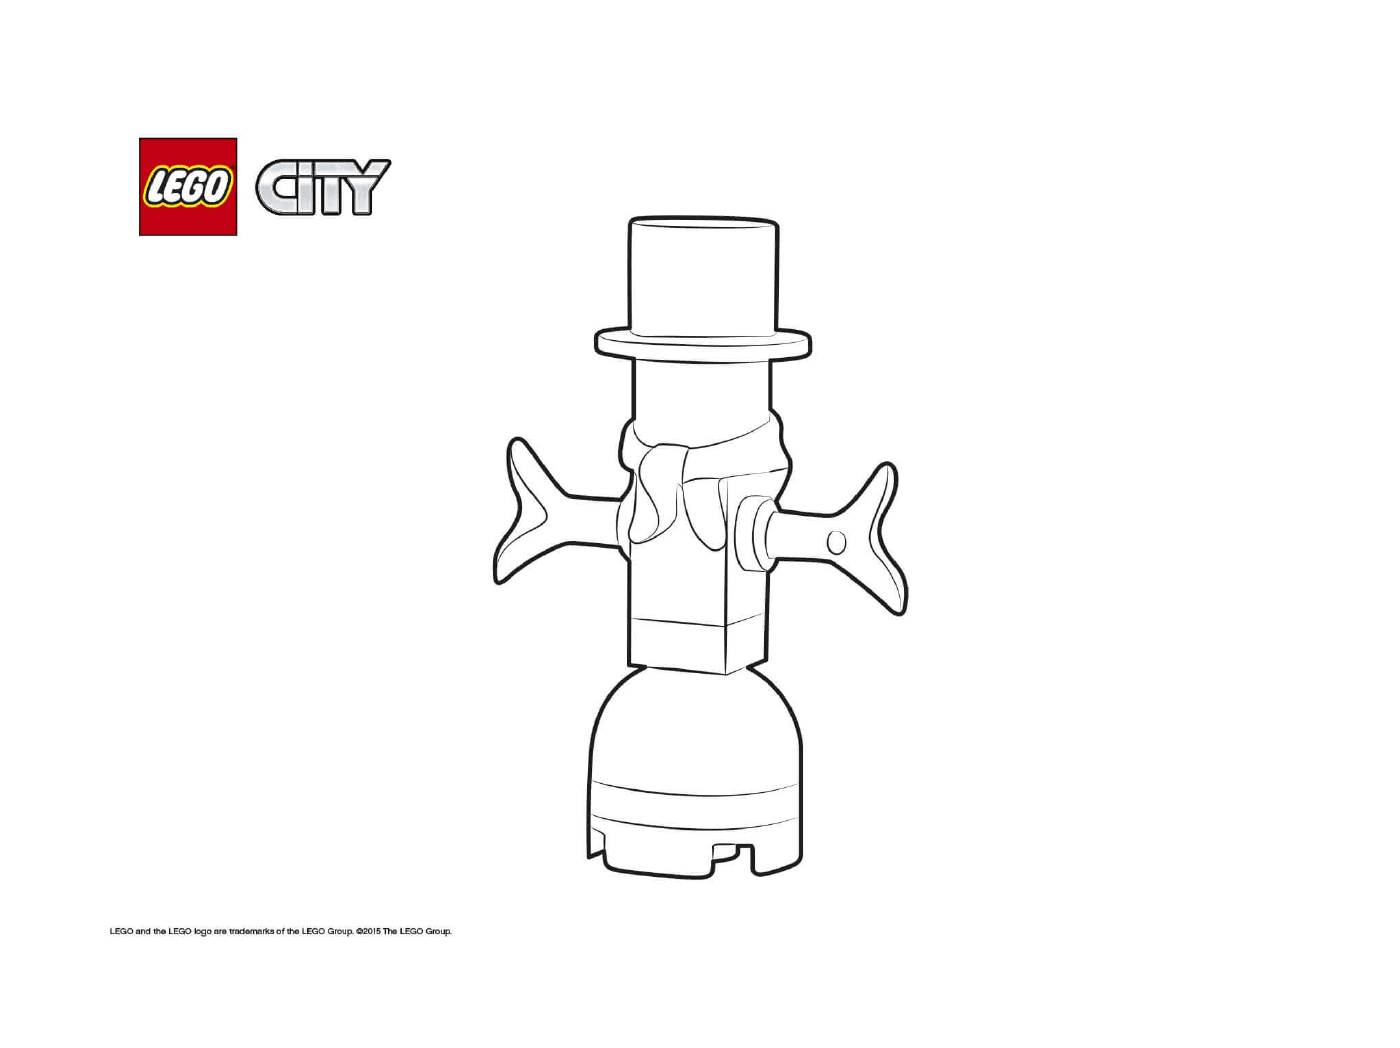  Advent Lego City Calendar 